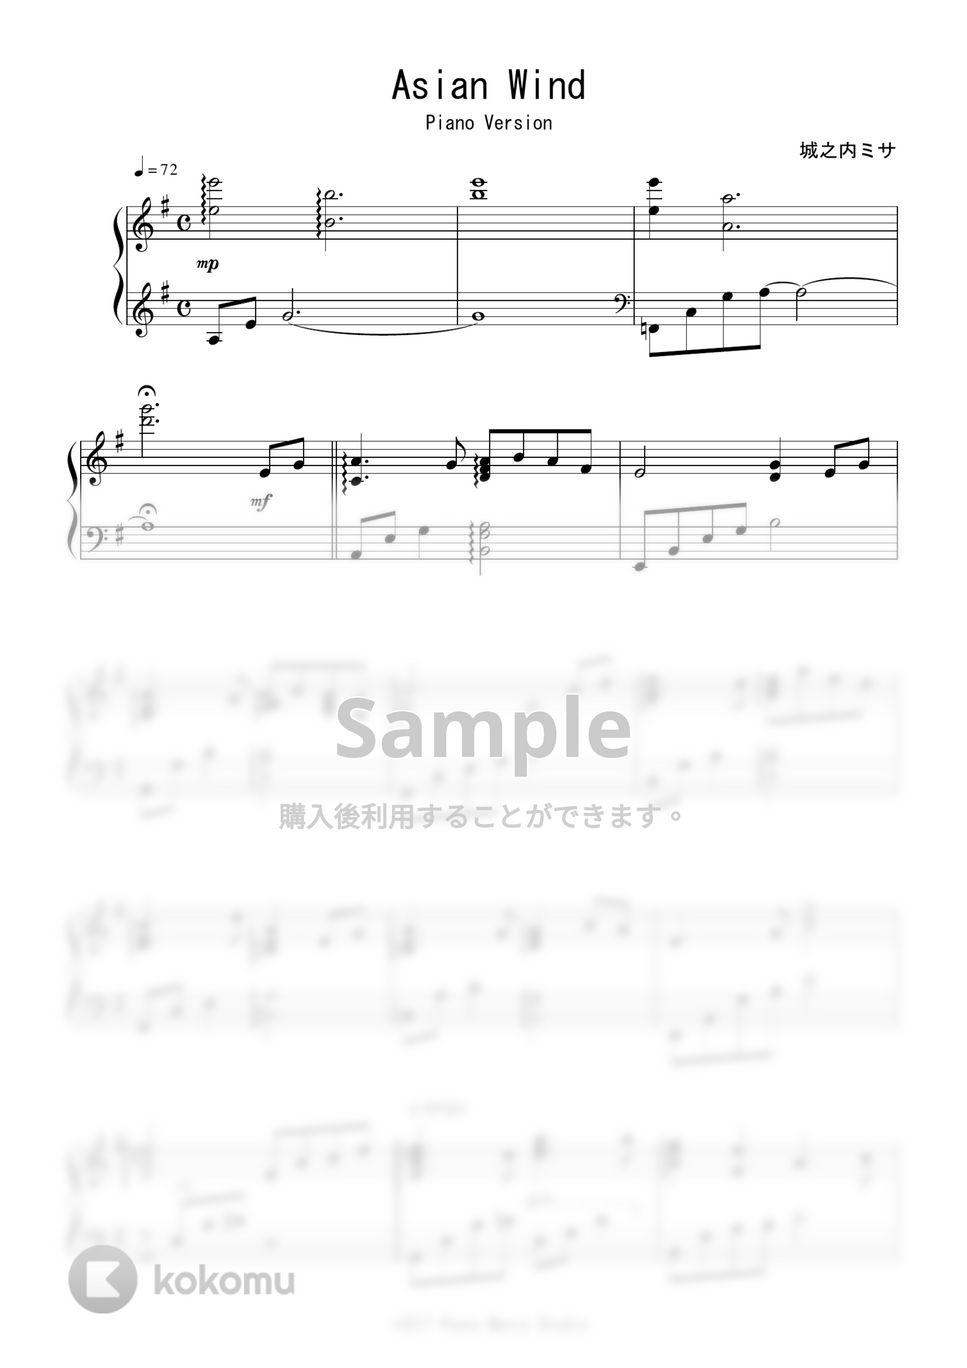 城之内ミサ - Asian Wind(Piano Version) (完コピ) by Peony